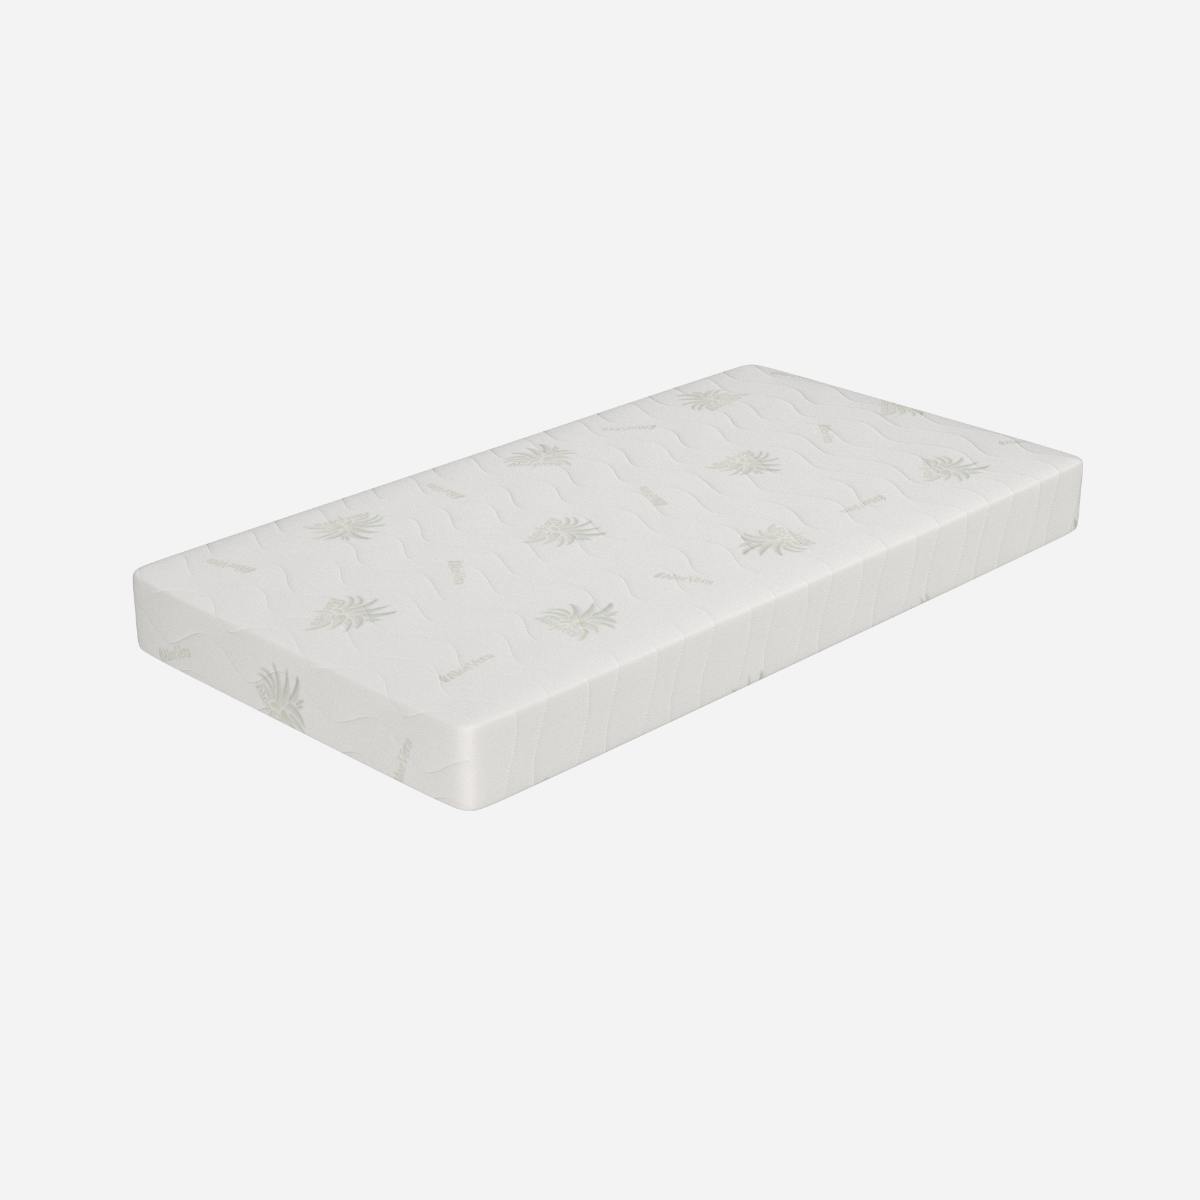 Materasso 80x200 materasso singolo memory foam in gel altezza 22cm